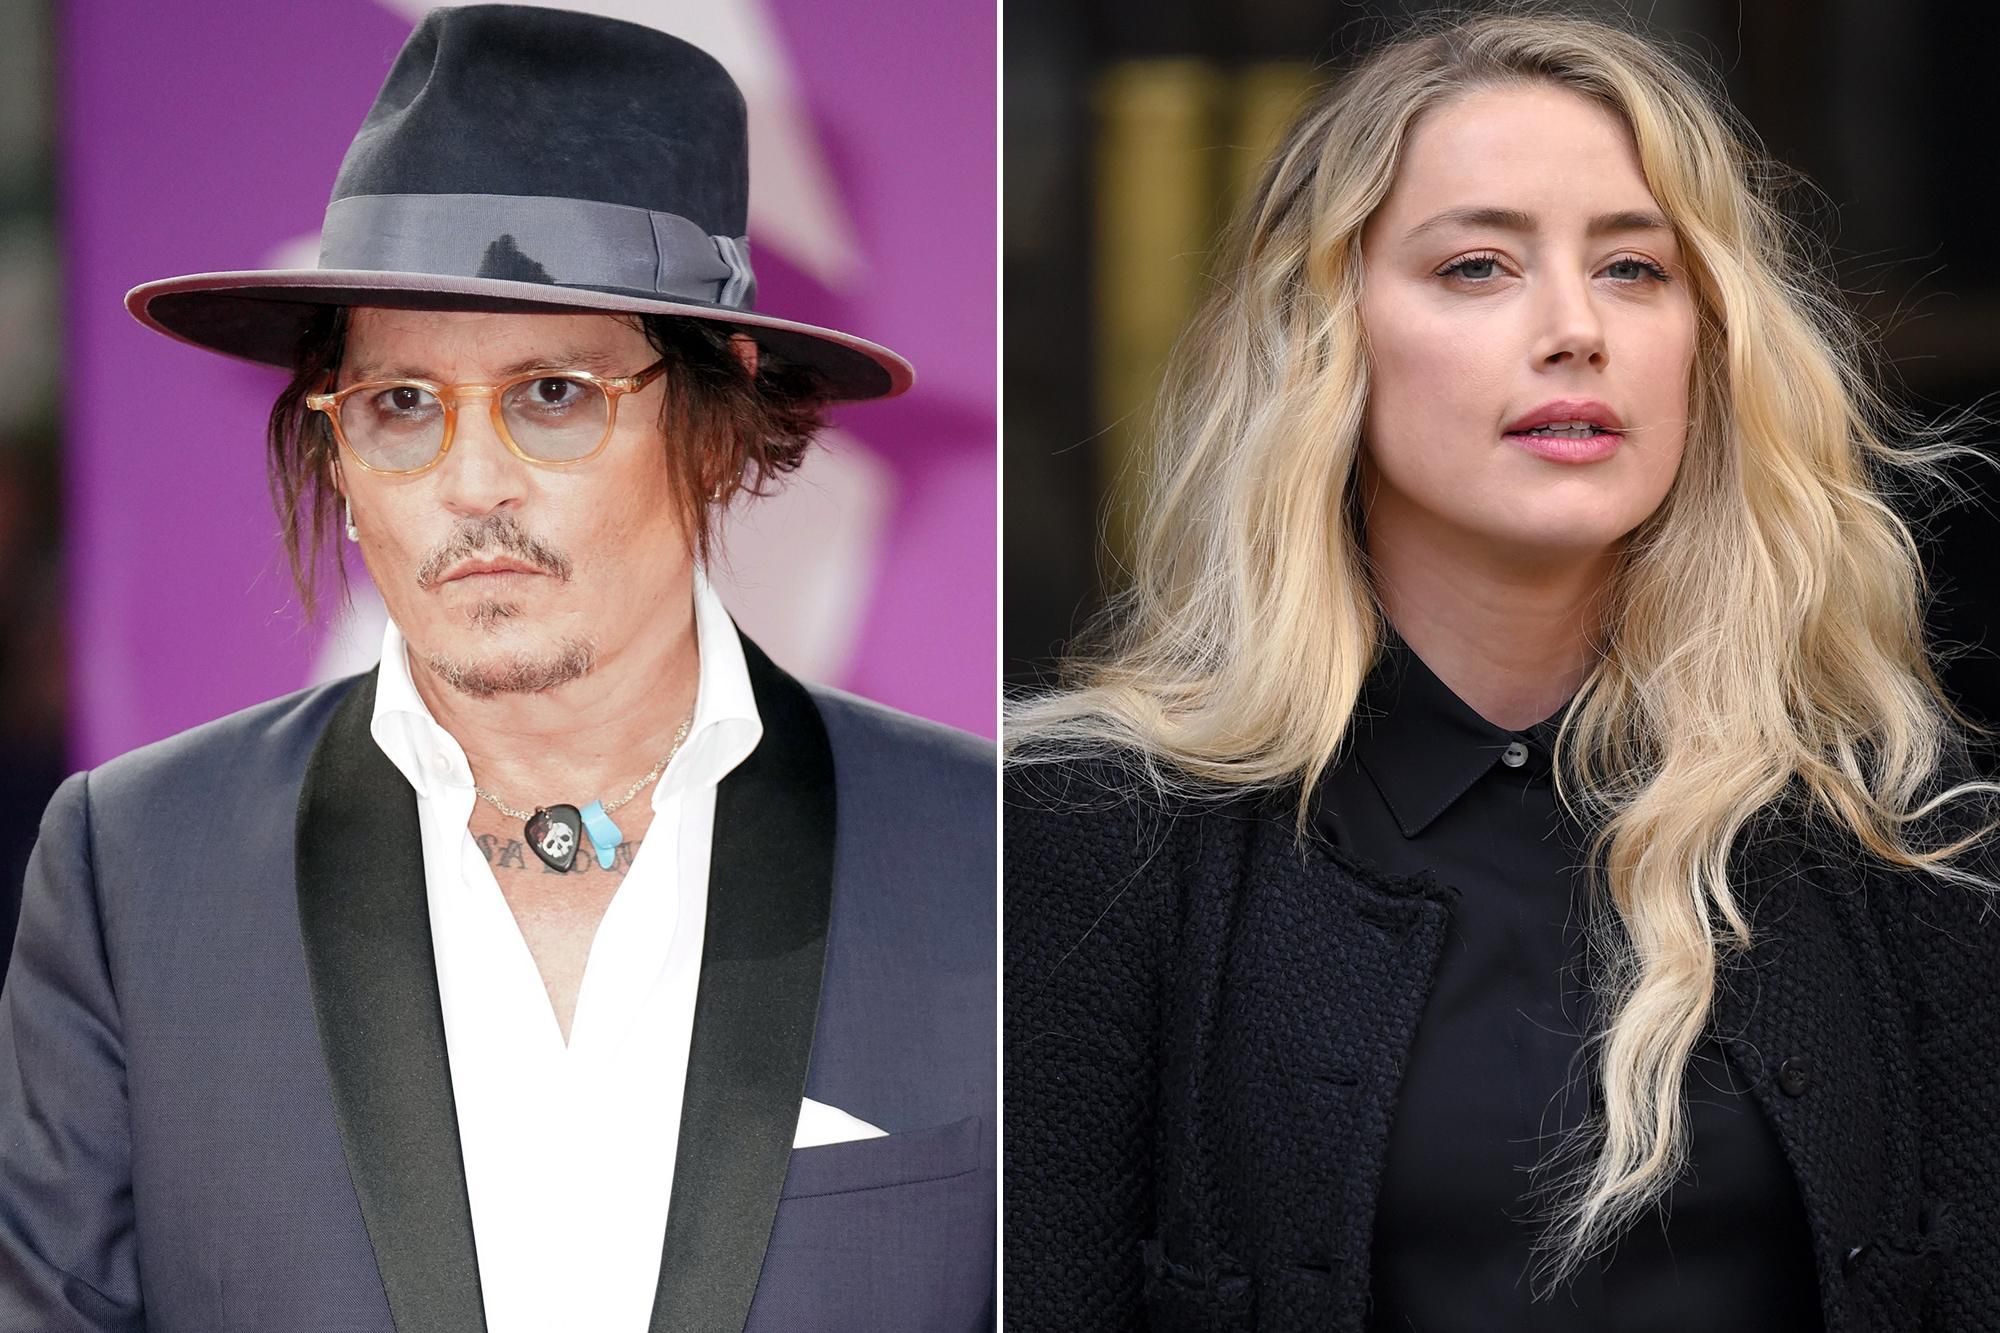 "Джонни против Эмбер": о скандальном разводе голливудских актеров снимут документалку